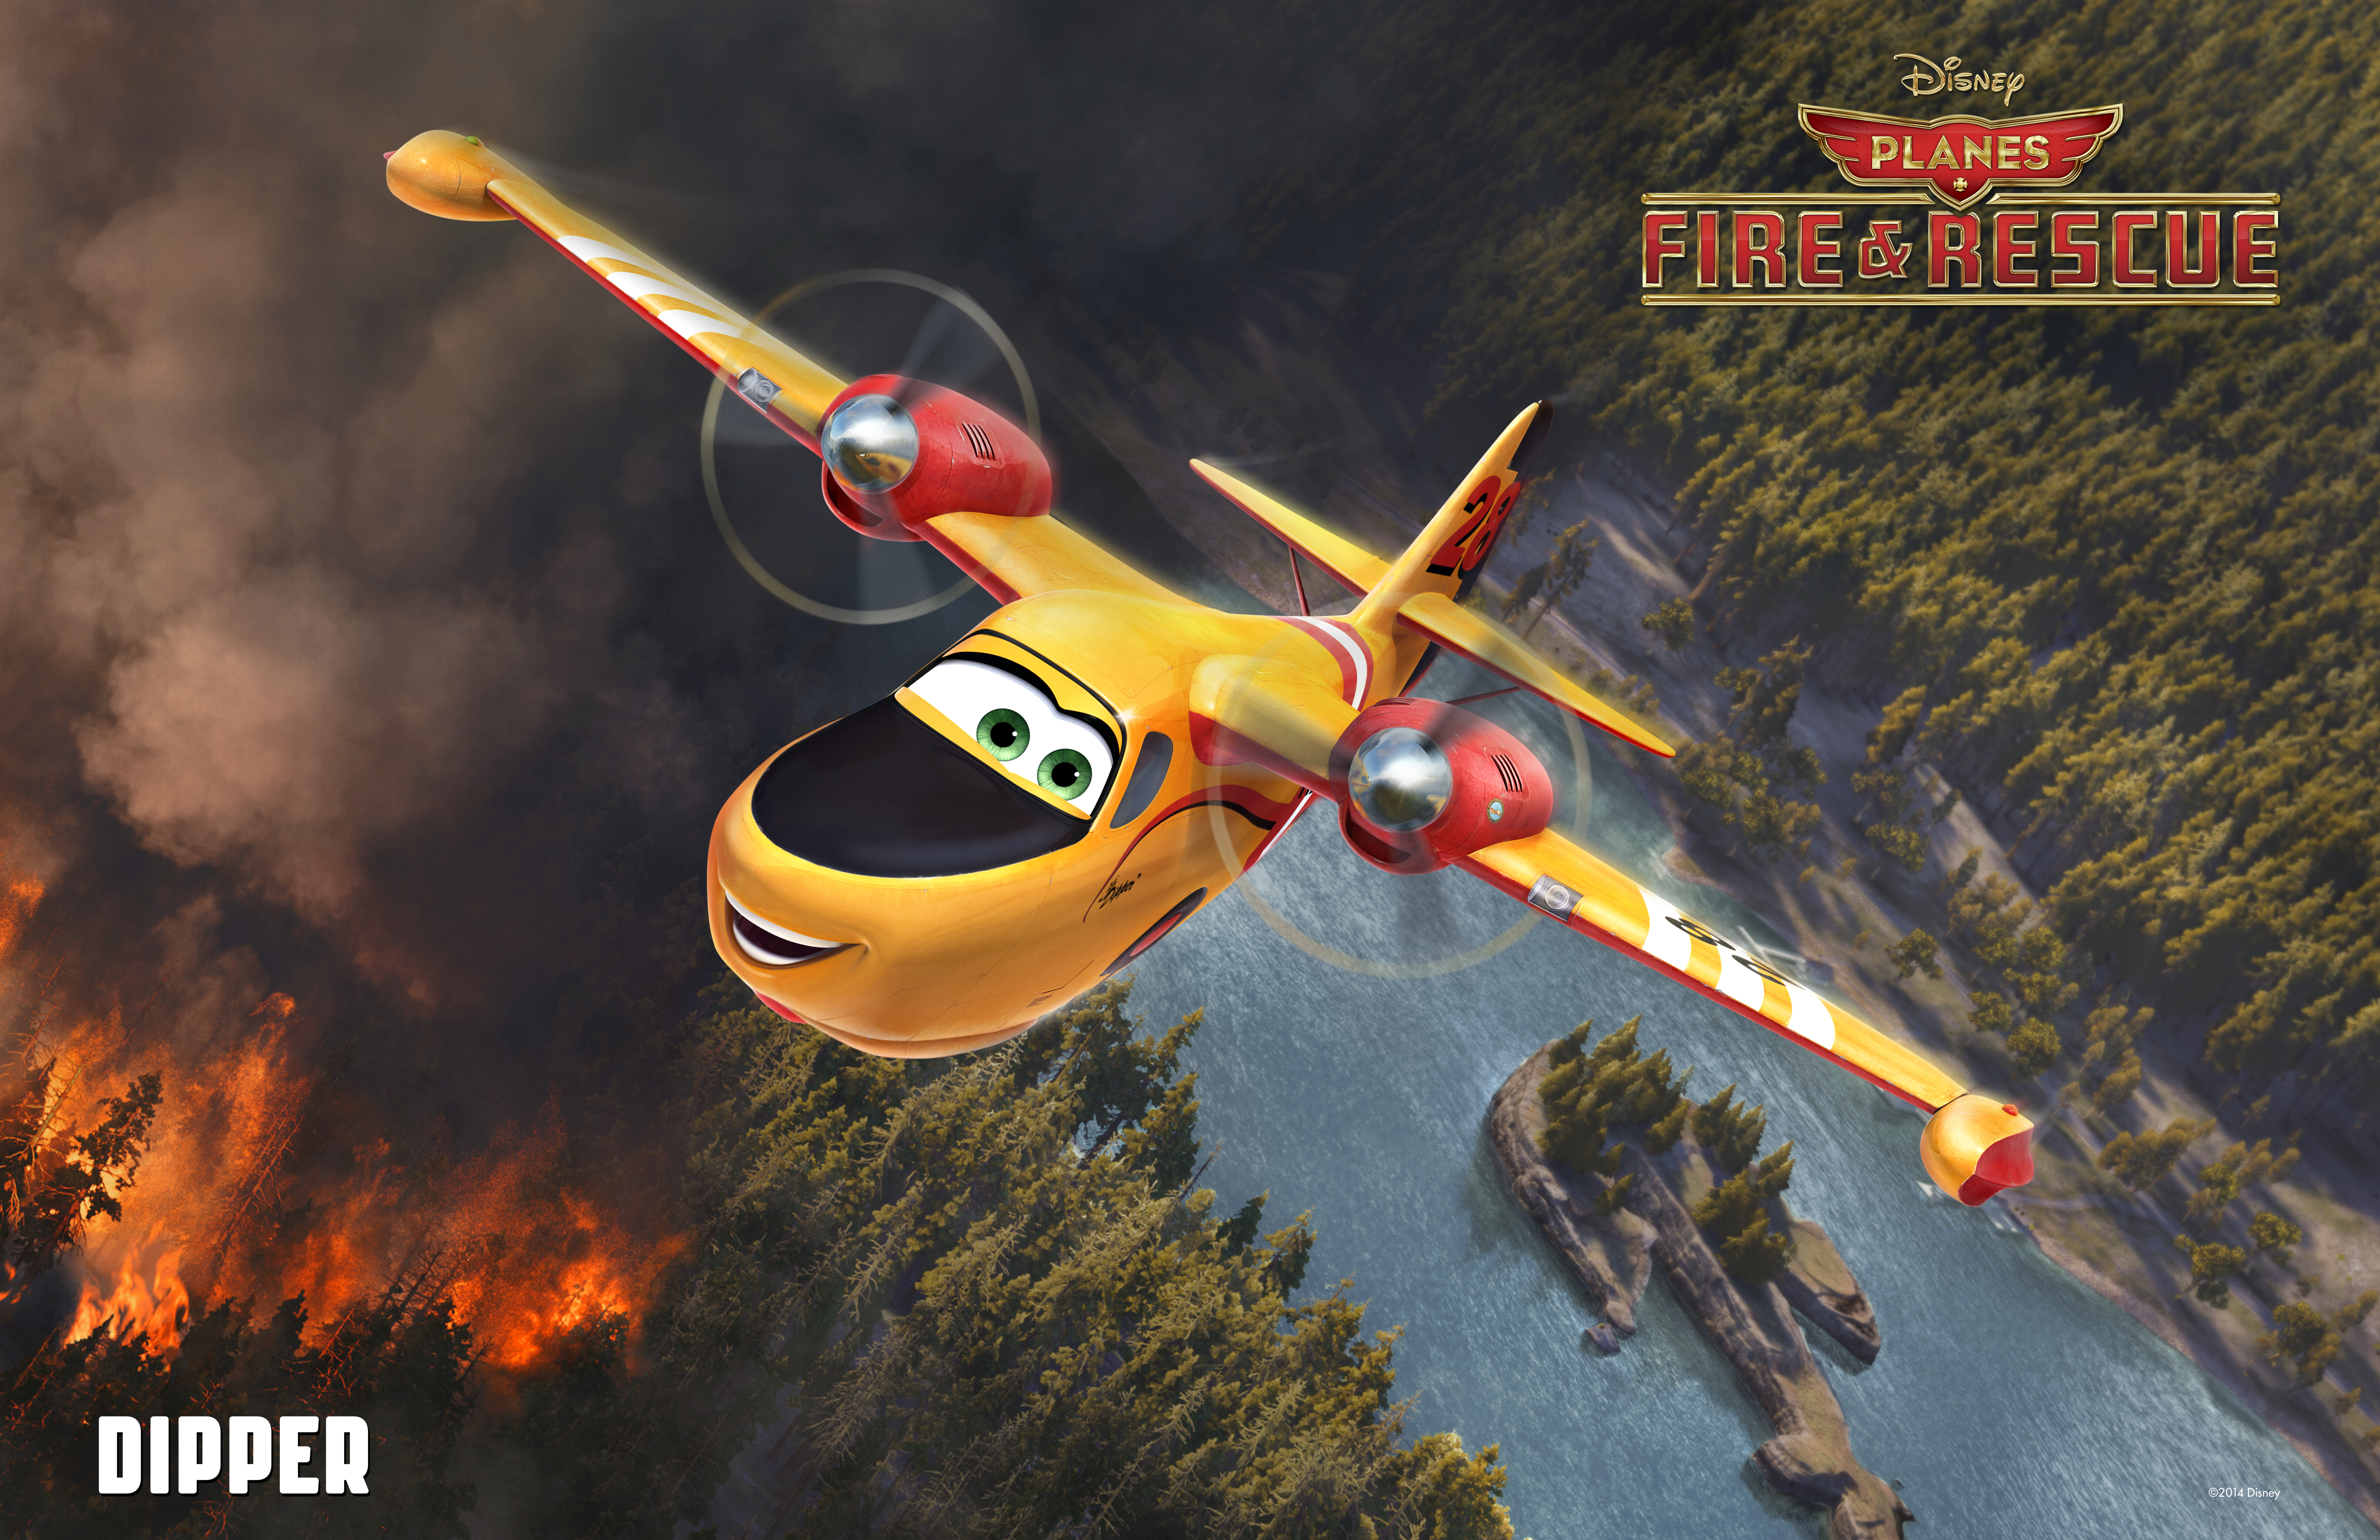 Planes: Fire & Rescue #7